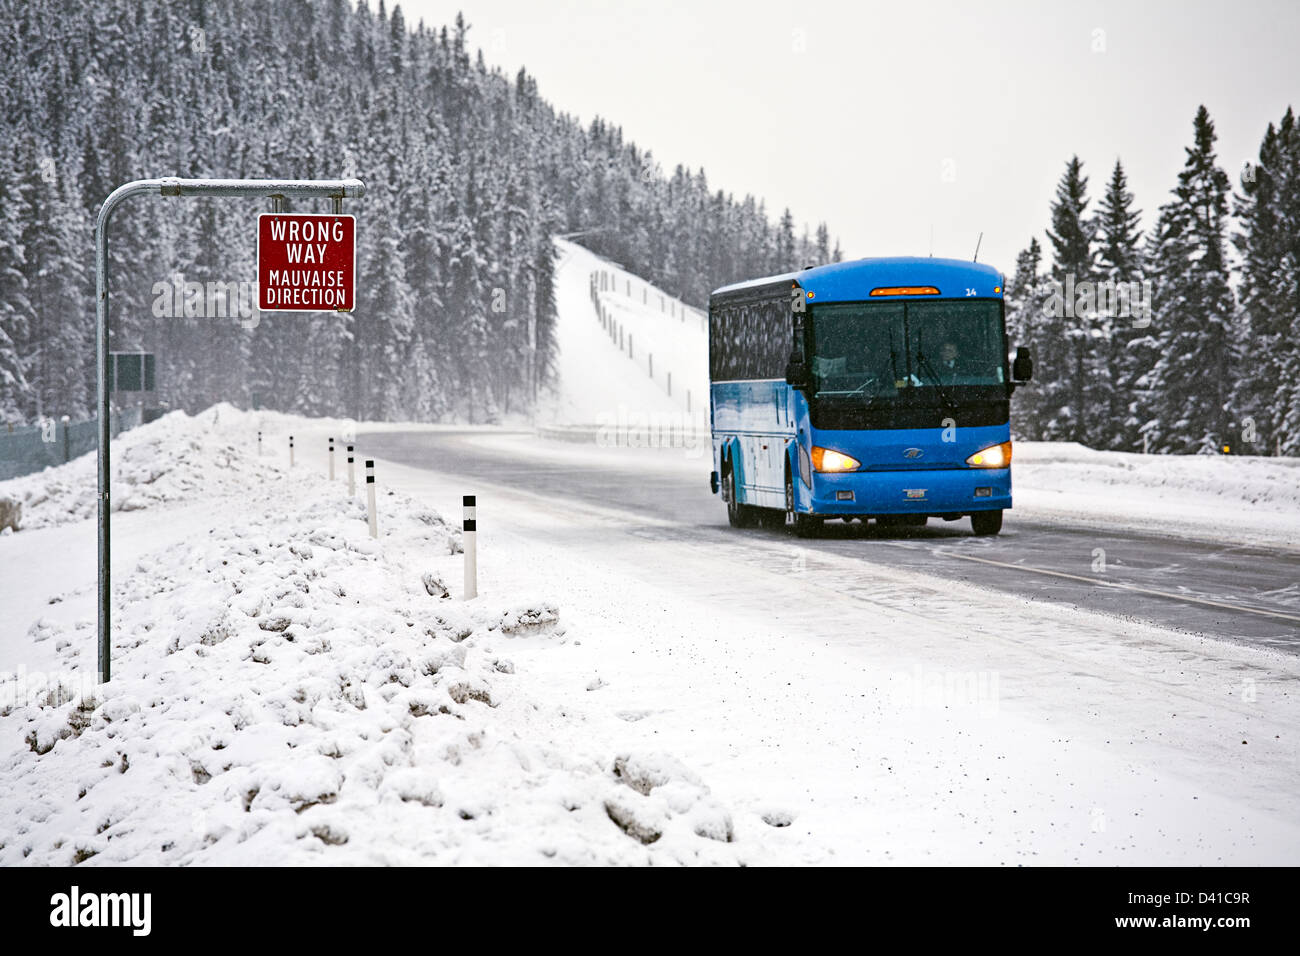 Mauvaise façon de signer et de bus de tournée sur la route transcanadienne dans des conditions hivernales, près de Lake Louise Banque D'Images